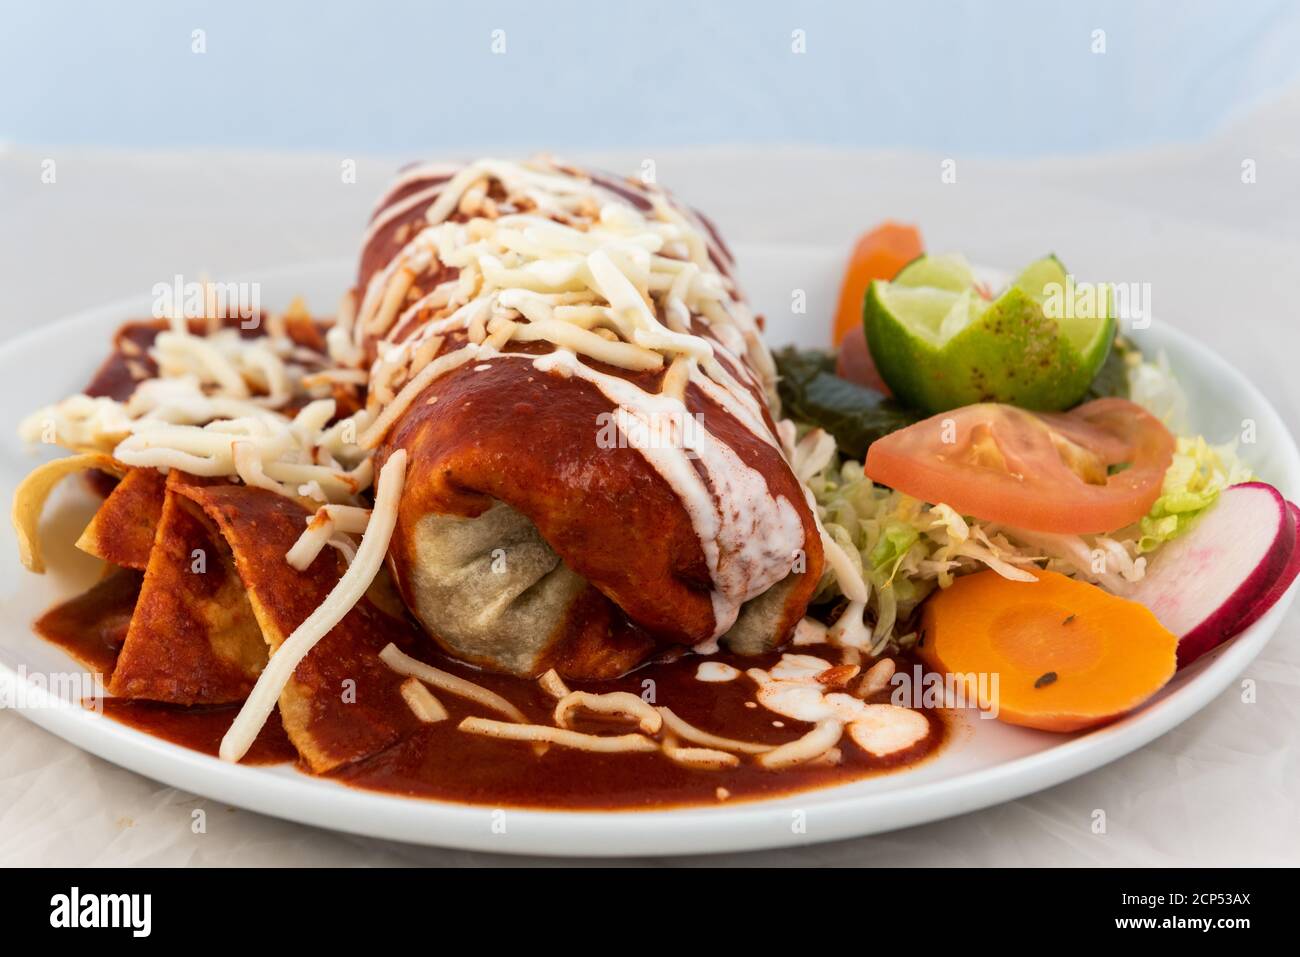 Burrito di ranchero umido con riso e fagioli serviti su un piatto caldo per alcuni deliziosi piatti messicani. Foto Stock